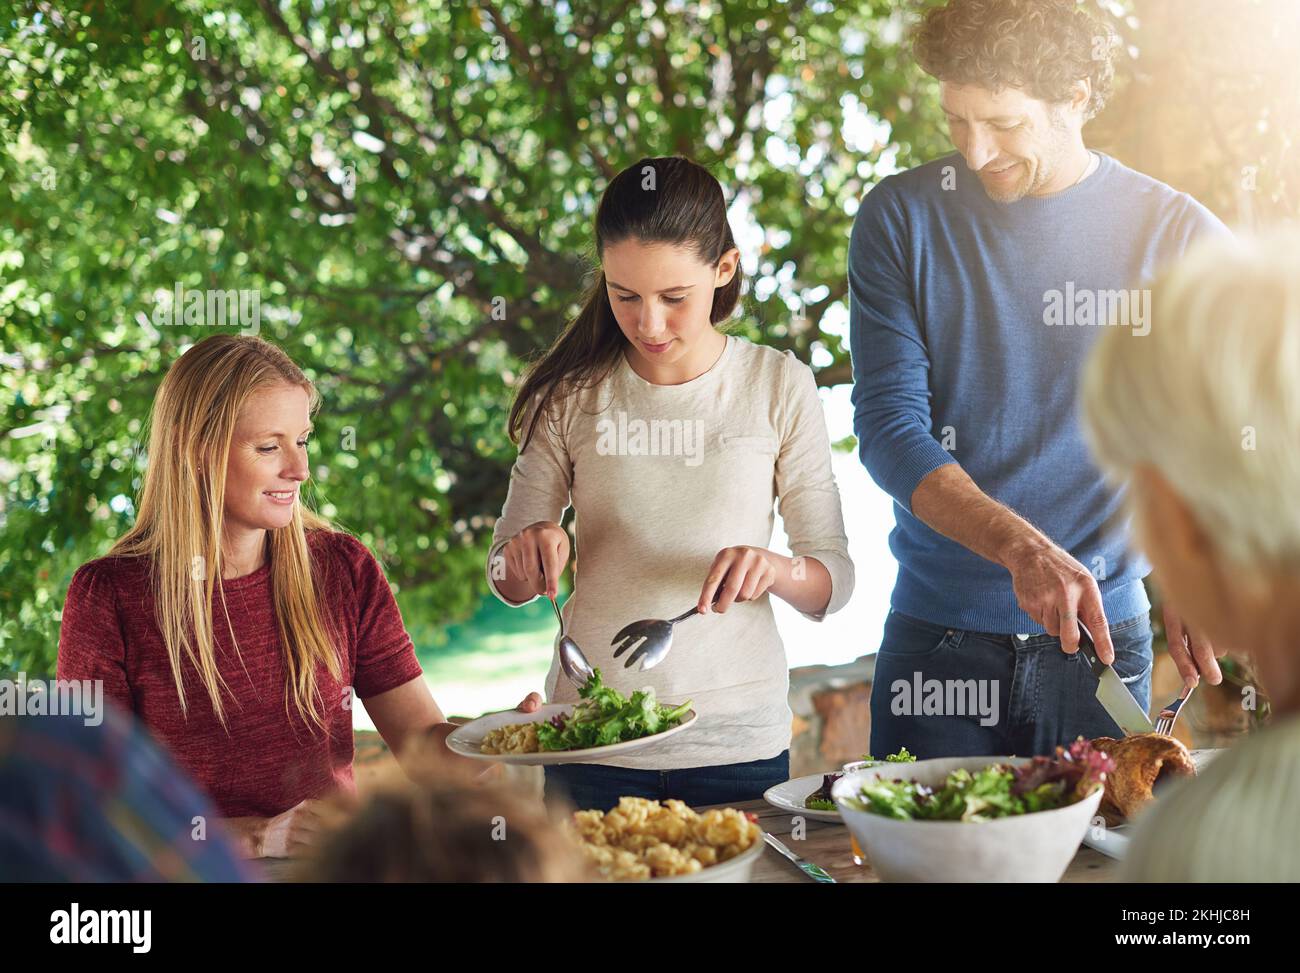 Ich Sorge dafür, dass sie genug Grünzeug bekommt. Eine Familie, die sich auf ein gemeinsames Mittagessen im Freien vorbereitet. Stockfoto